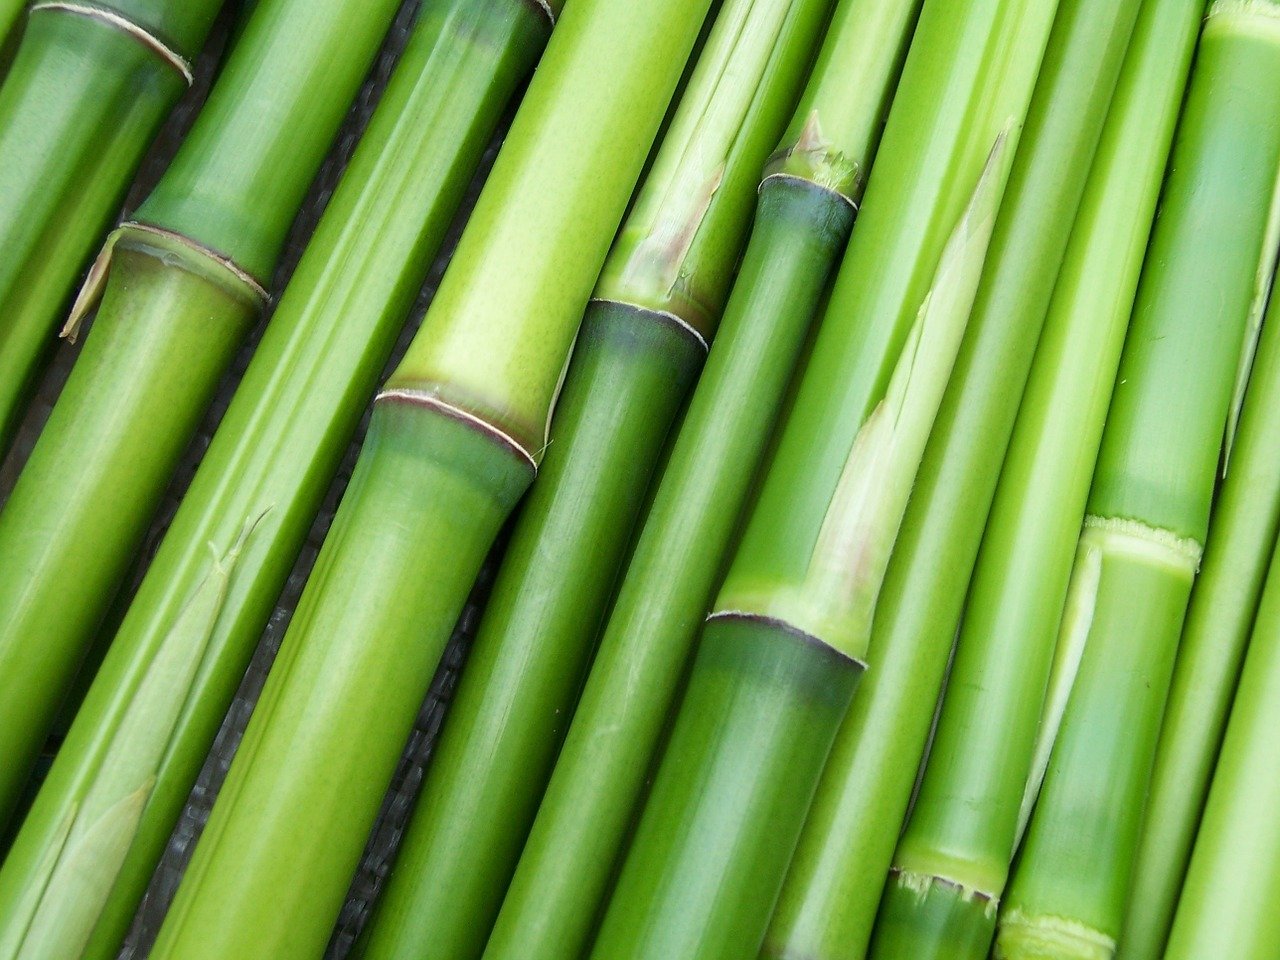 bambus beneficiisi contraindicatii, mod de utilizare, informatii despre bambus, ceai de bambus